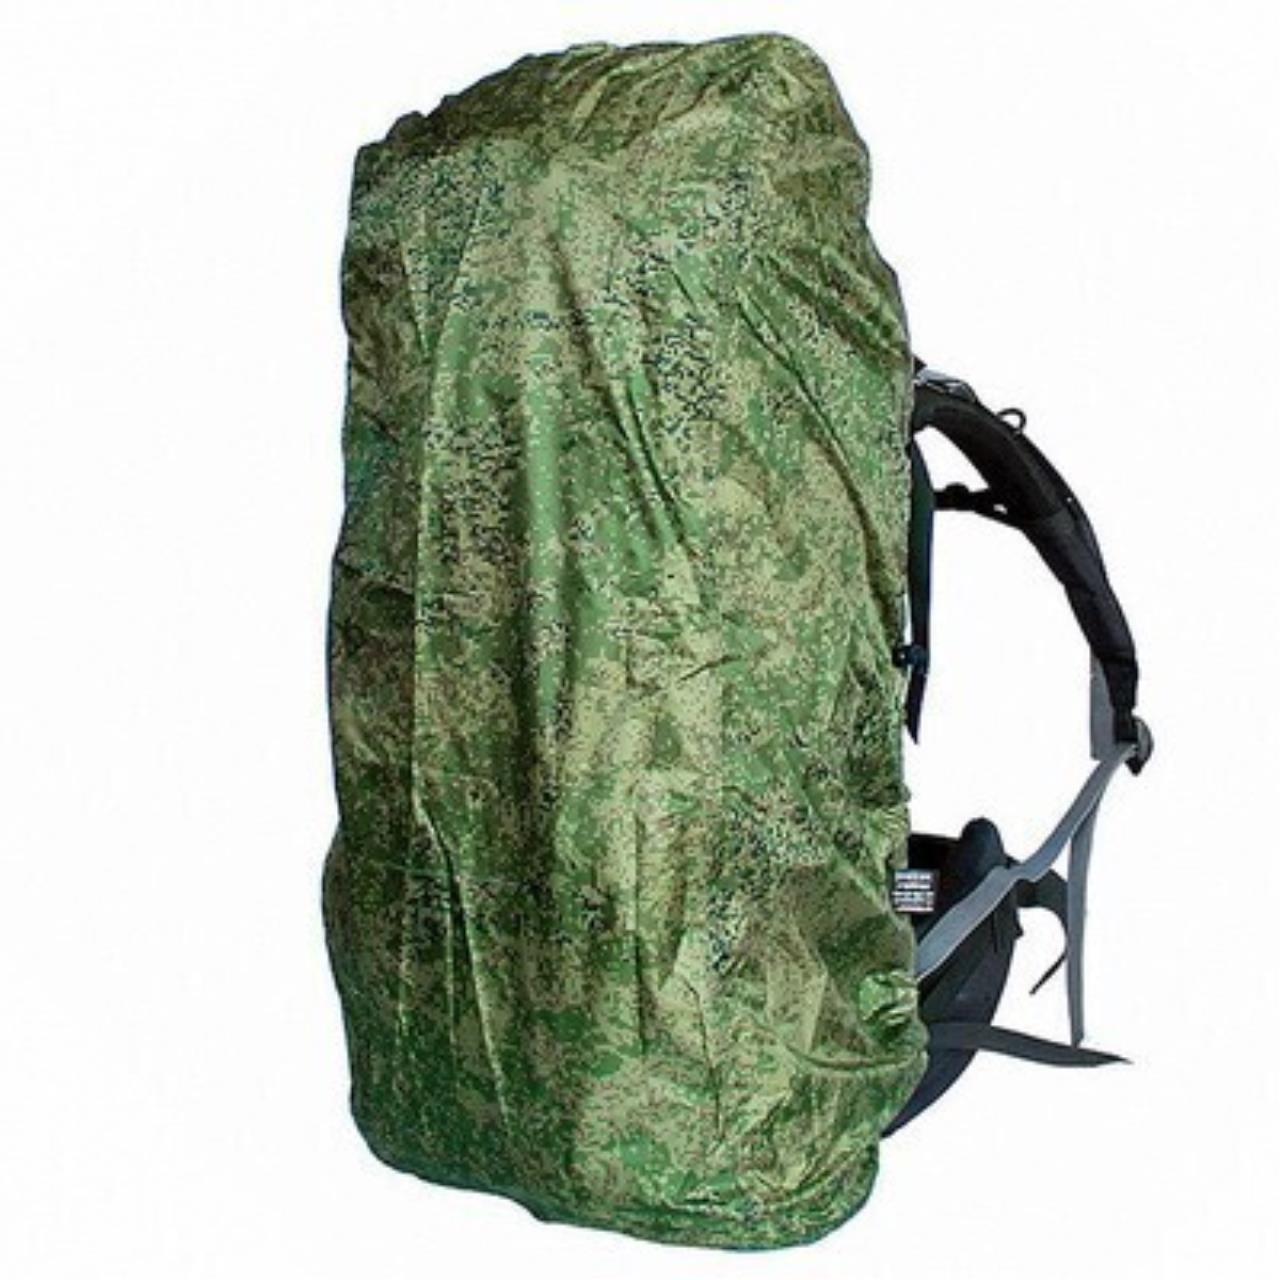 Чехол штормовой для рюкзака XL камуфляж